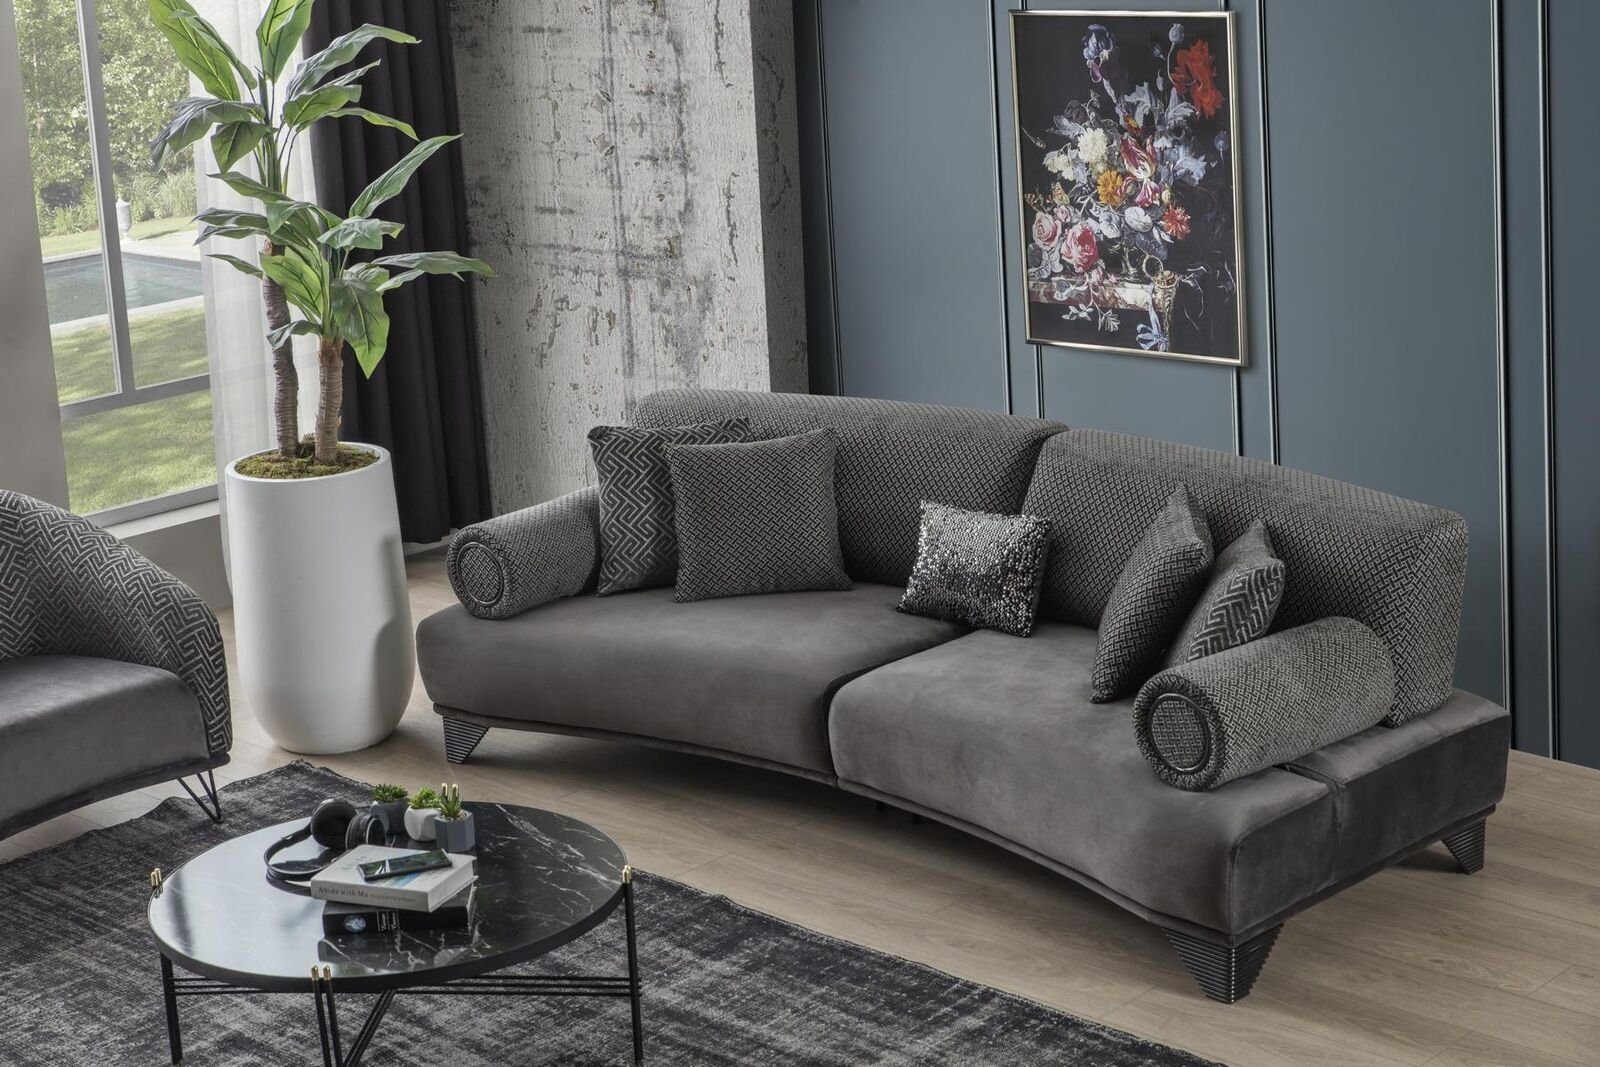 JVmoebel Stoff Dreisitzer Design Gebogene Luxus Couch Sofa Sofa Wohnzimmer